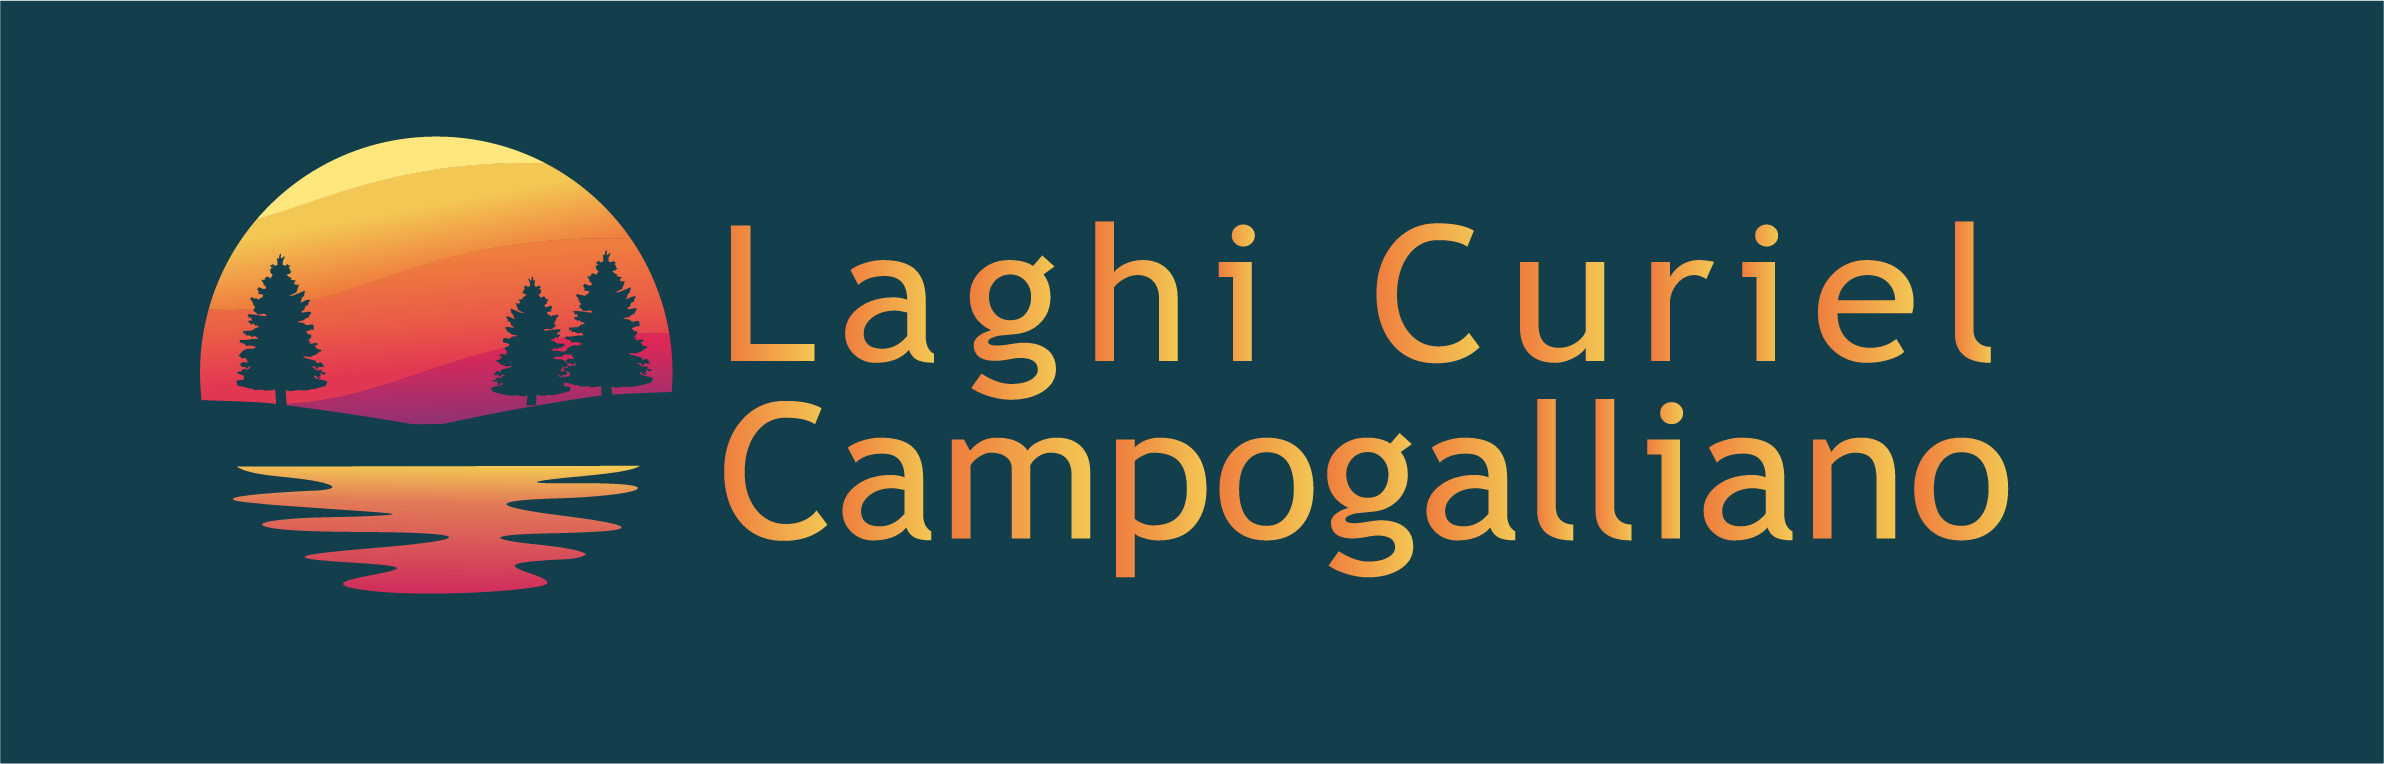 Laghi Curiel Campogalliano Logo